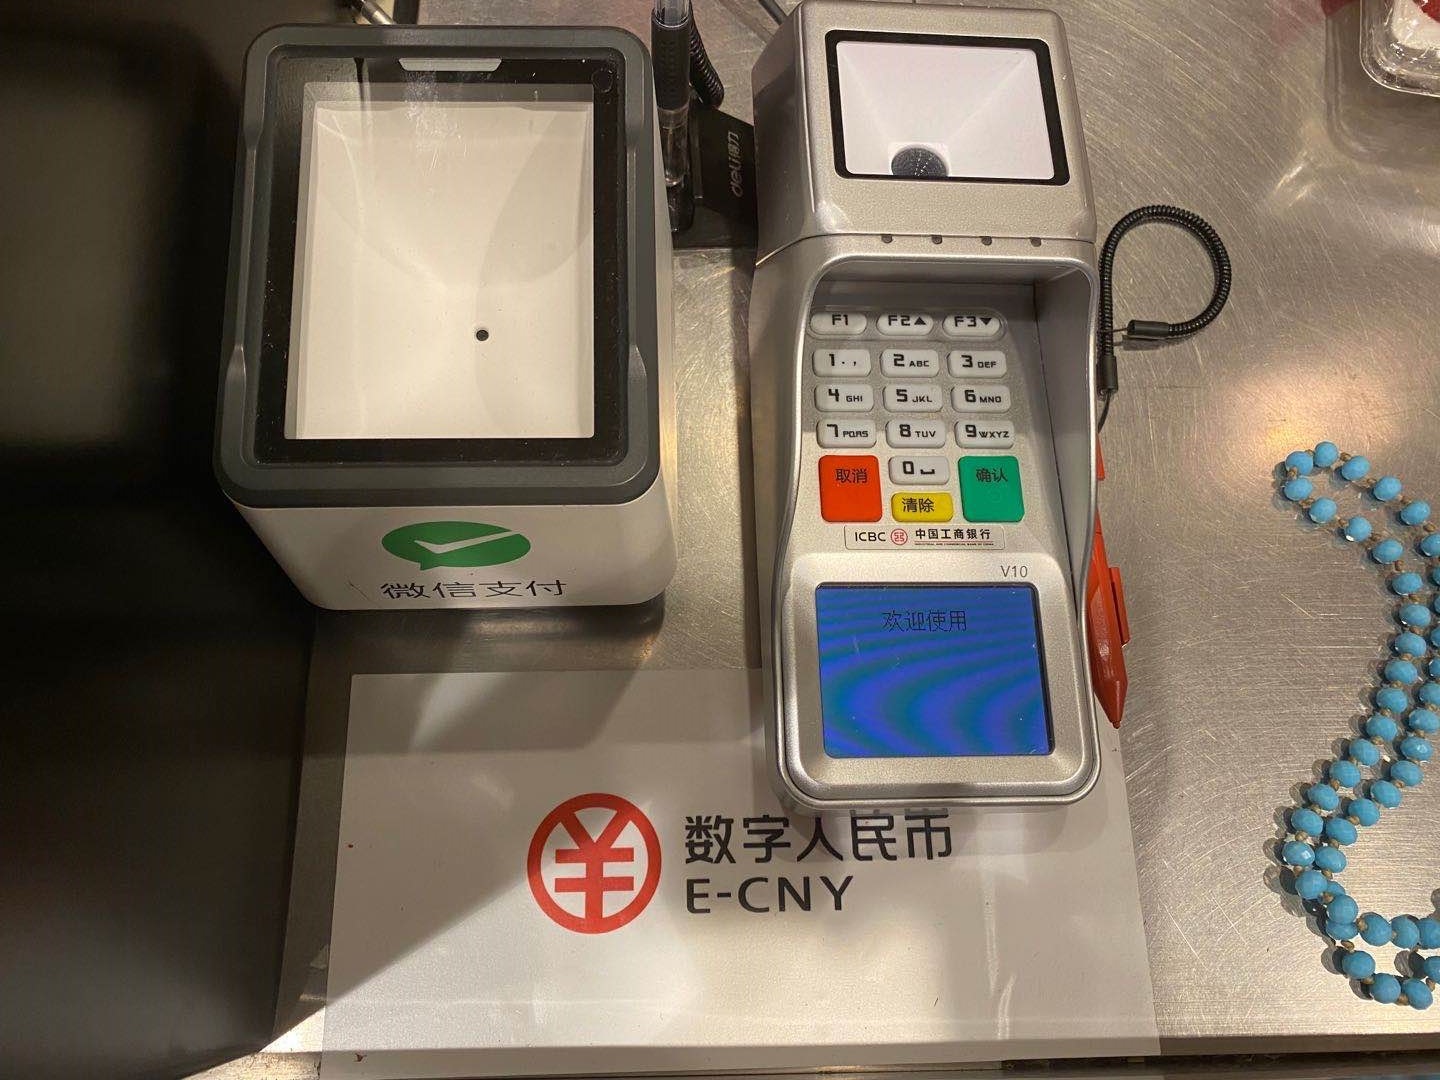 一家商户收银台上的数字人民币可使用提示以及刷码设备 图 澎湃新闻记者 叶映荷